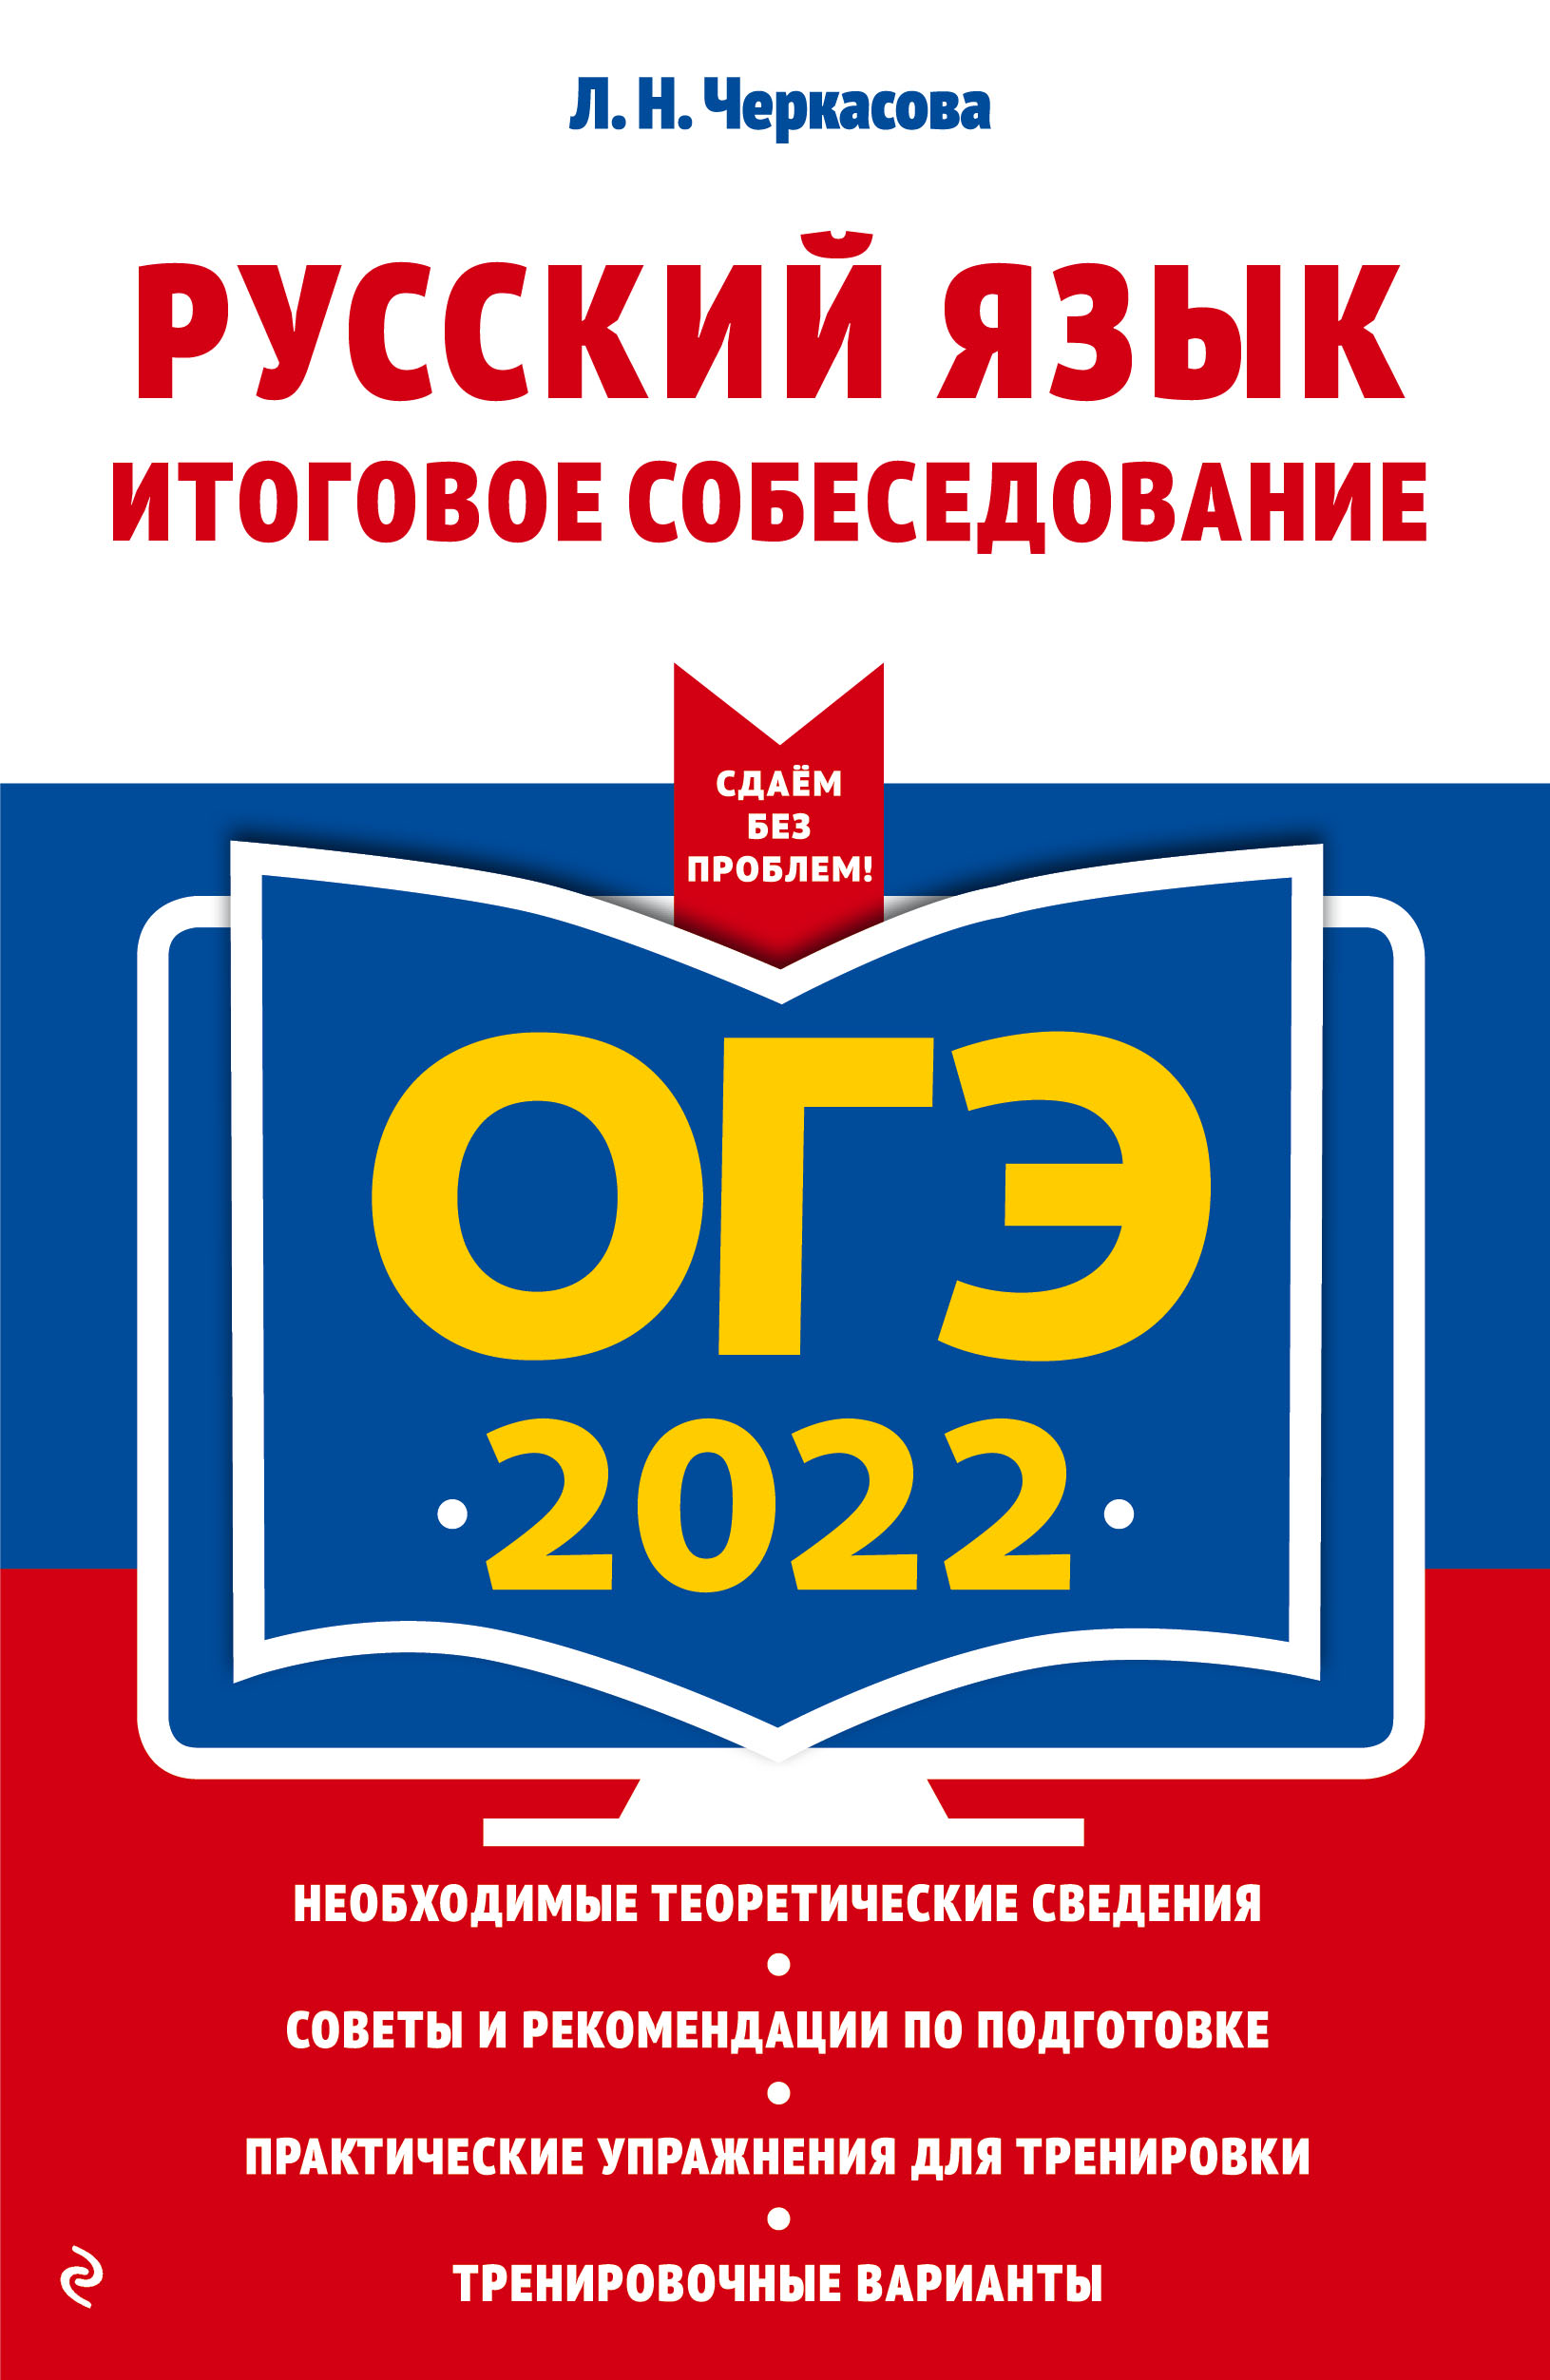  .. -2022.  .   